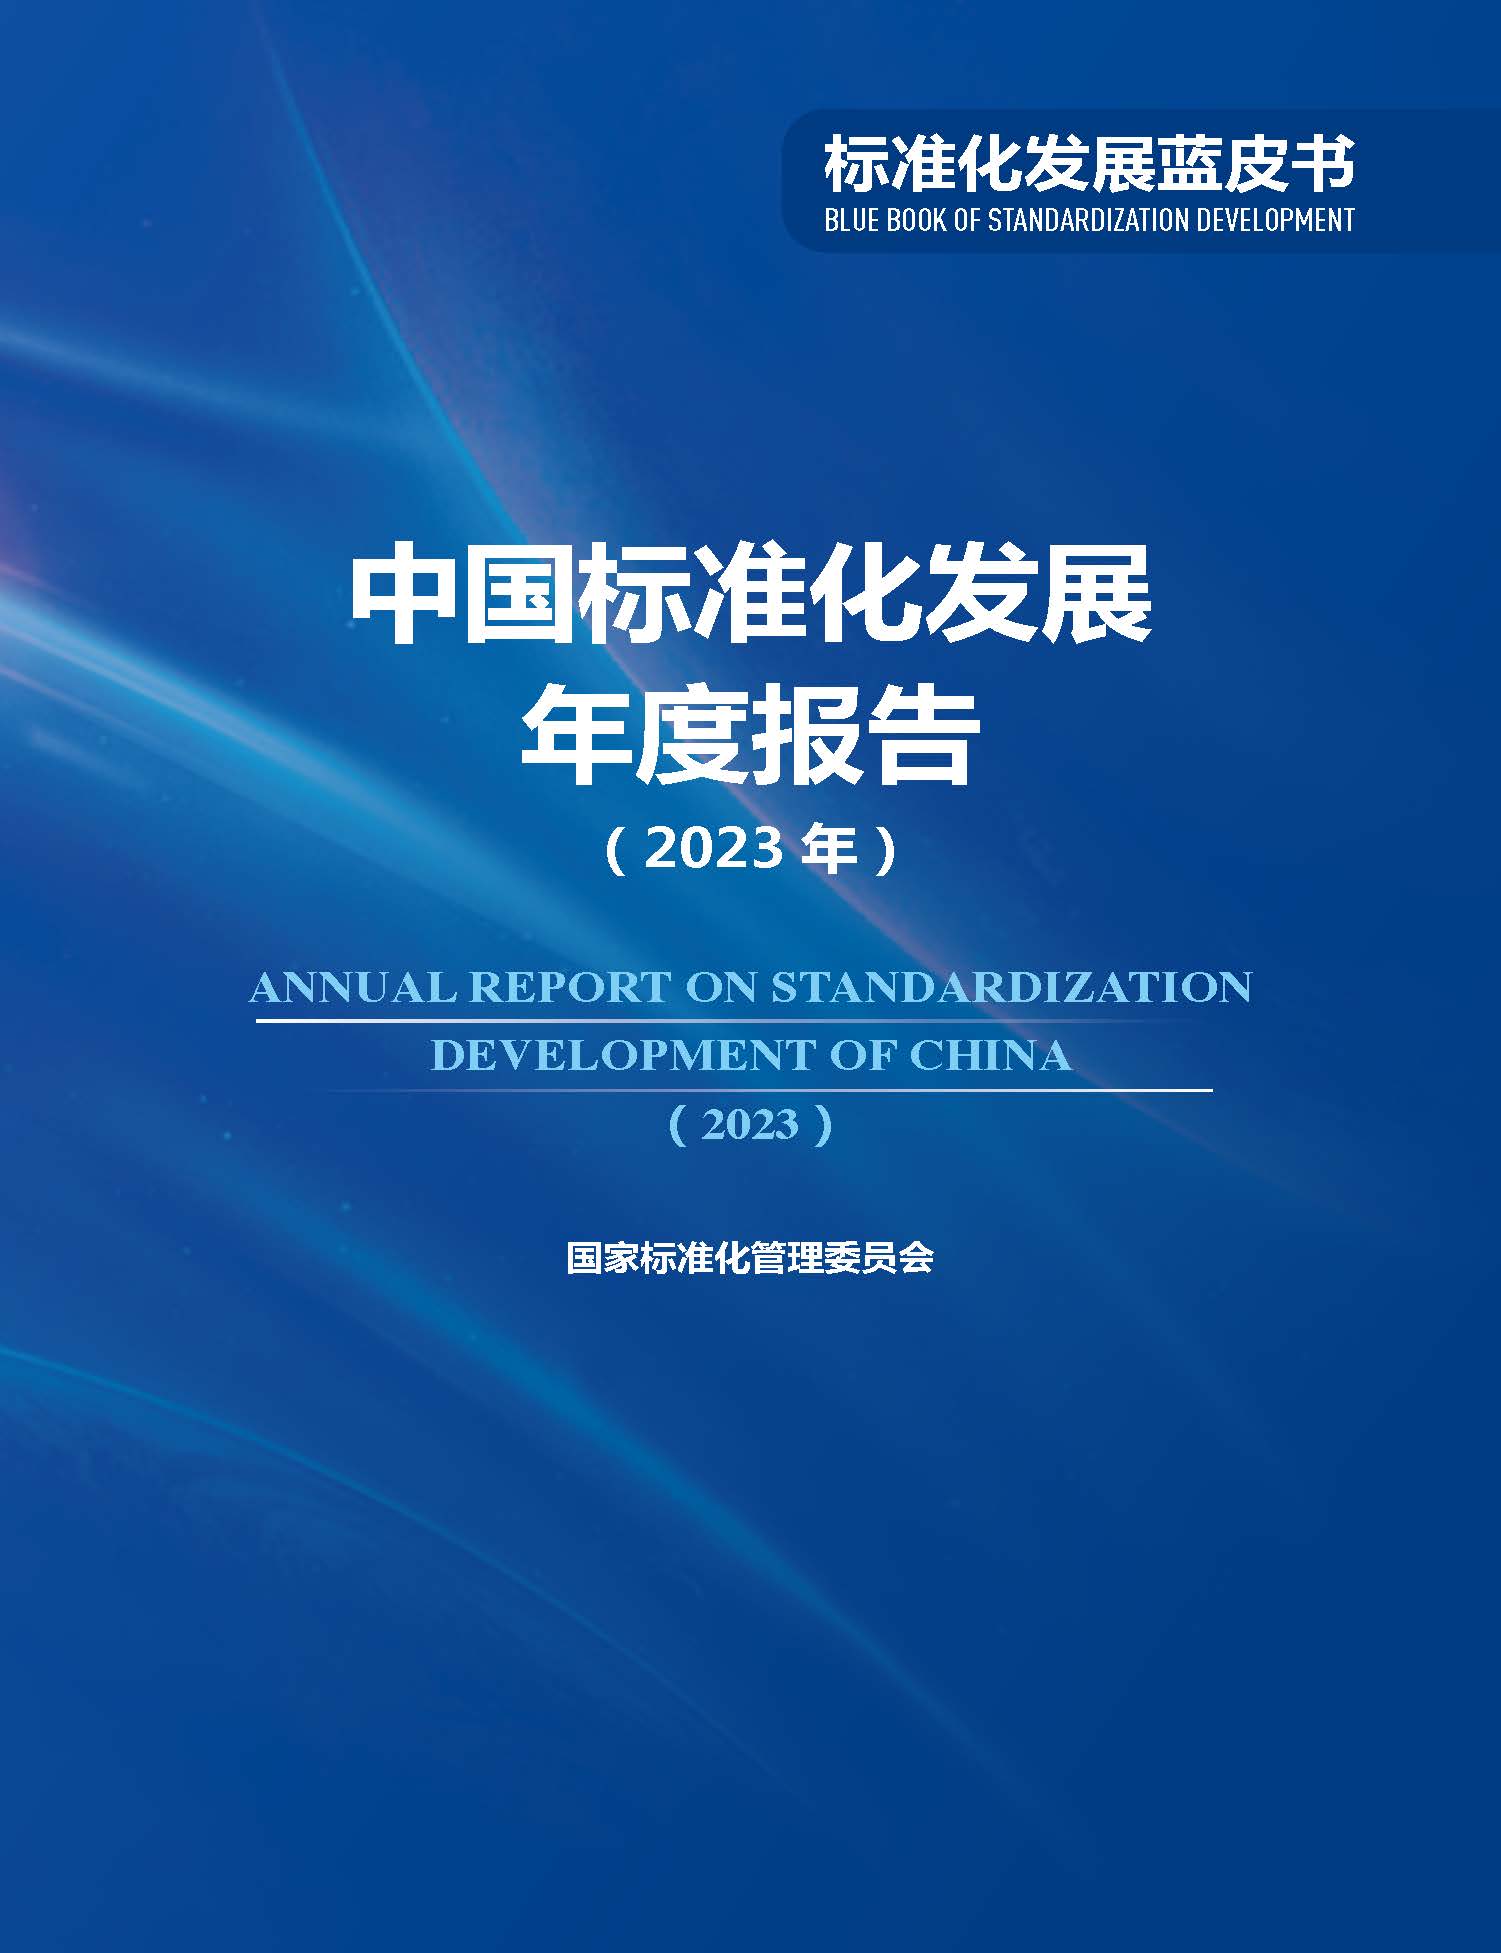 《中国标准化发展年度报告（2023年）》_页面_01.jpg